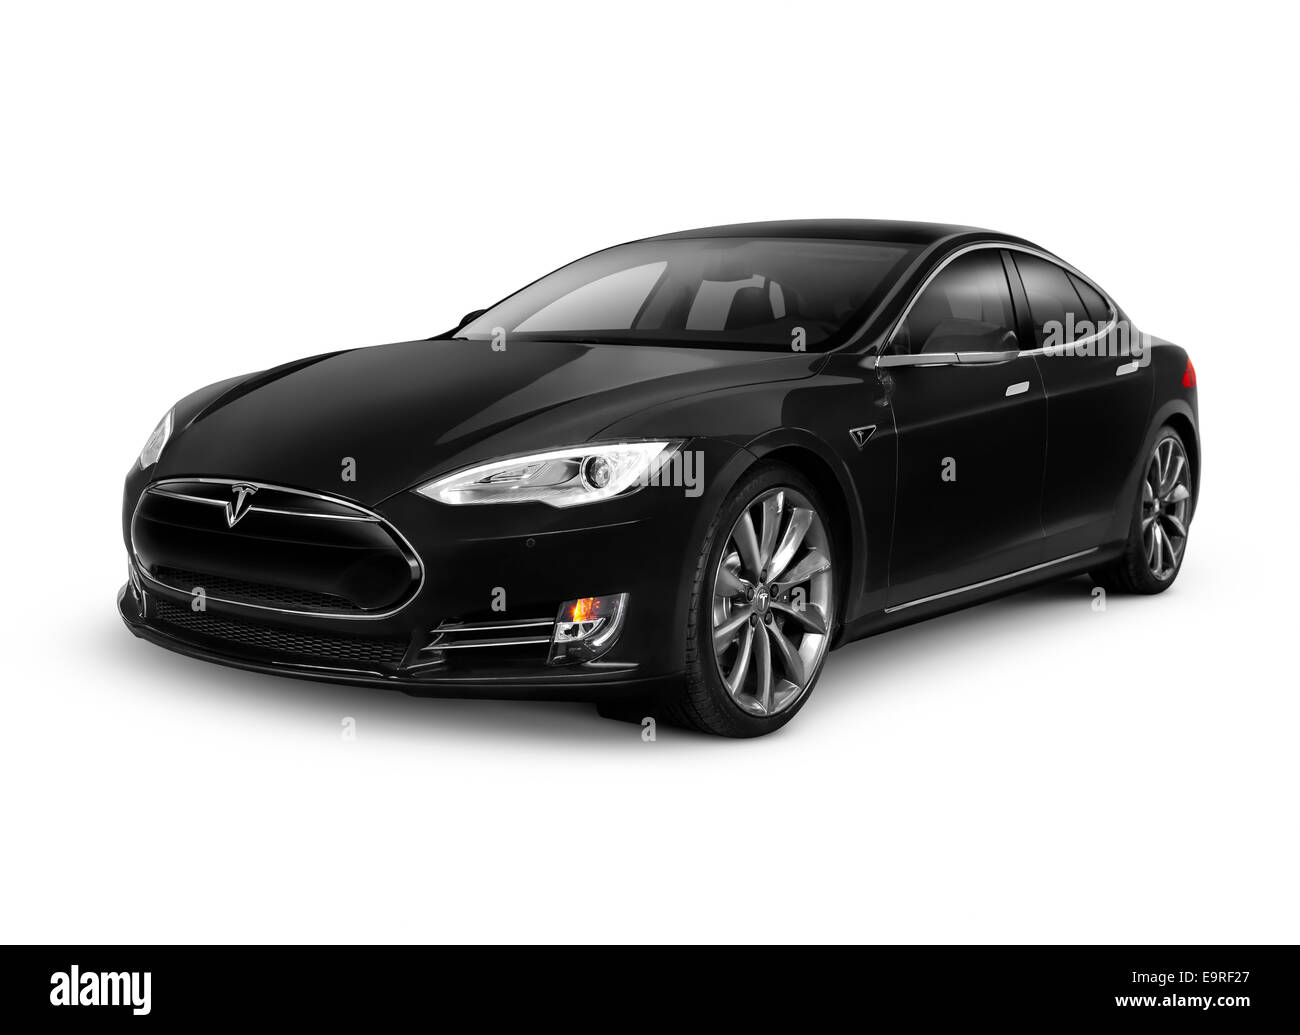 Licenza e stampe su MaximImages.com - Black 2014 Tesla Model S auto elettrica di lusso isolata su sfondo bianco con percorso di ritaglio Foto Stock